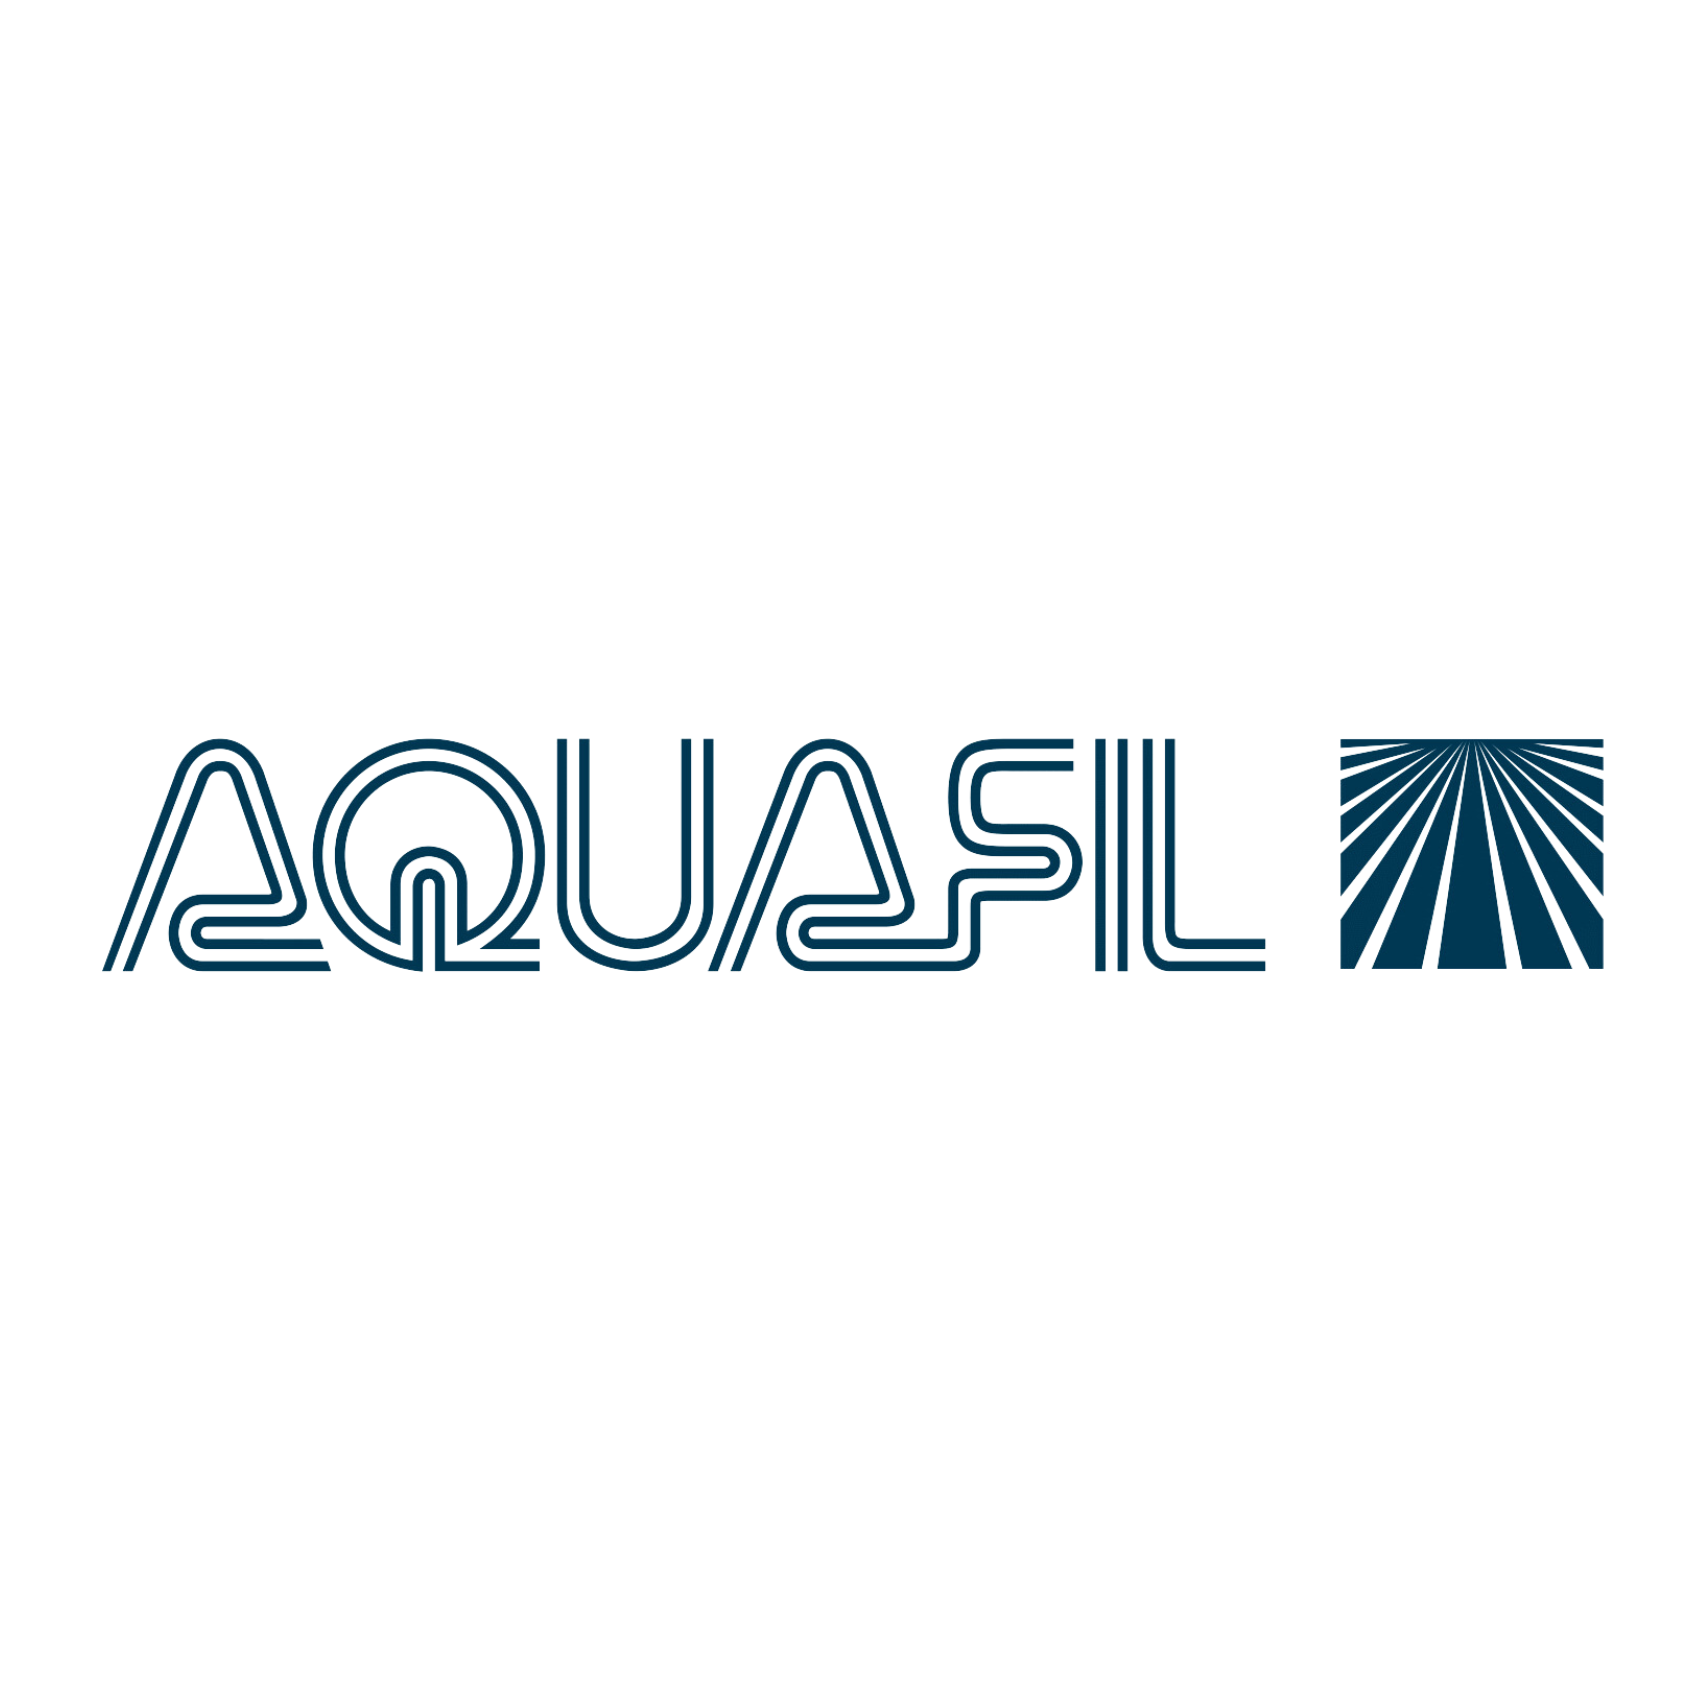 Aquafil Group